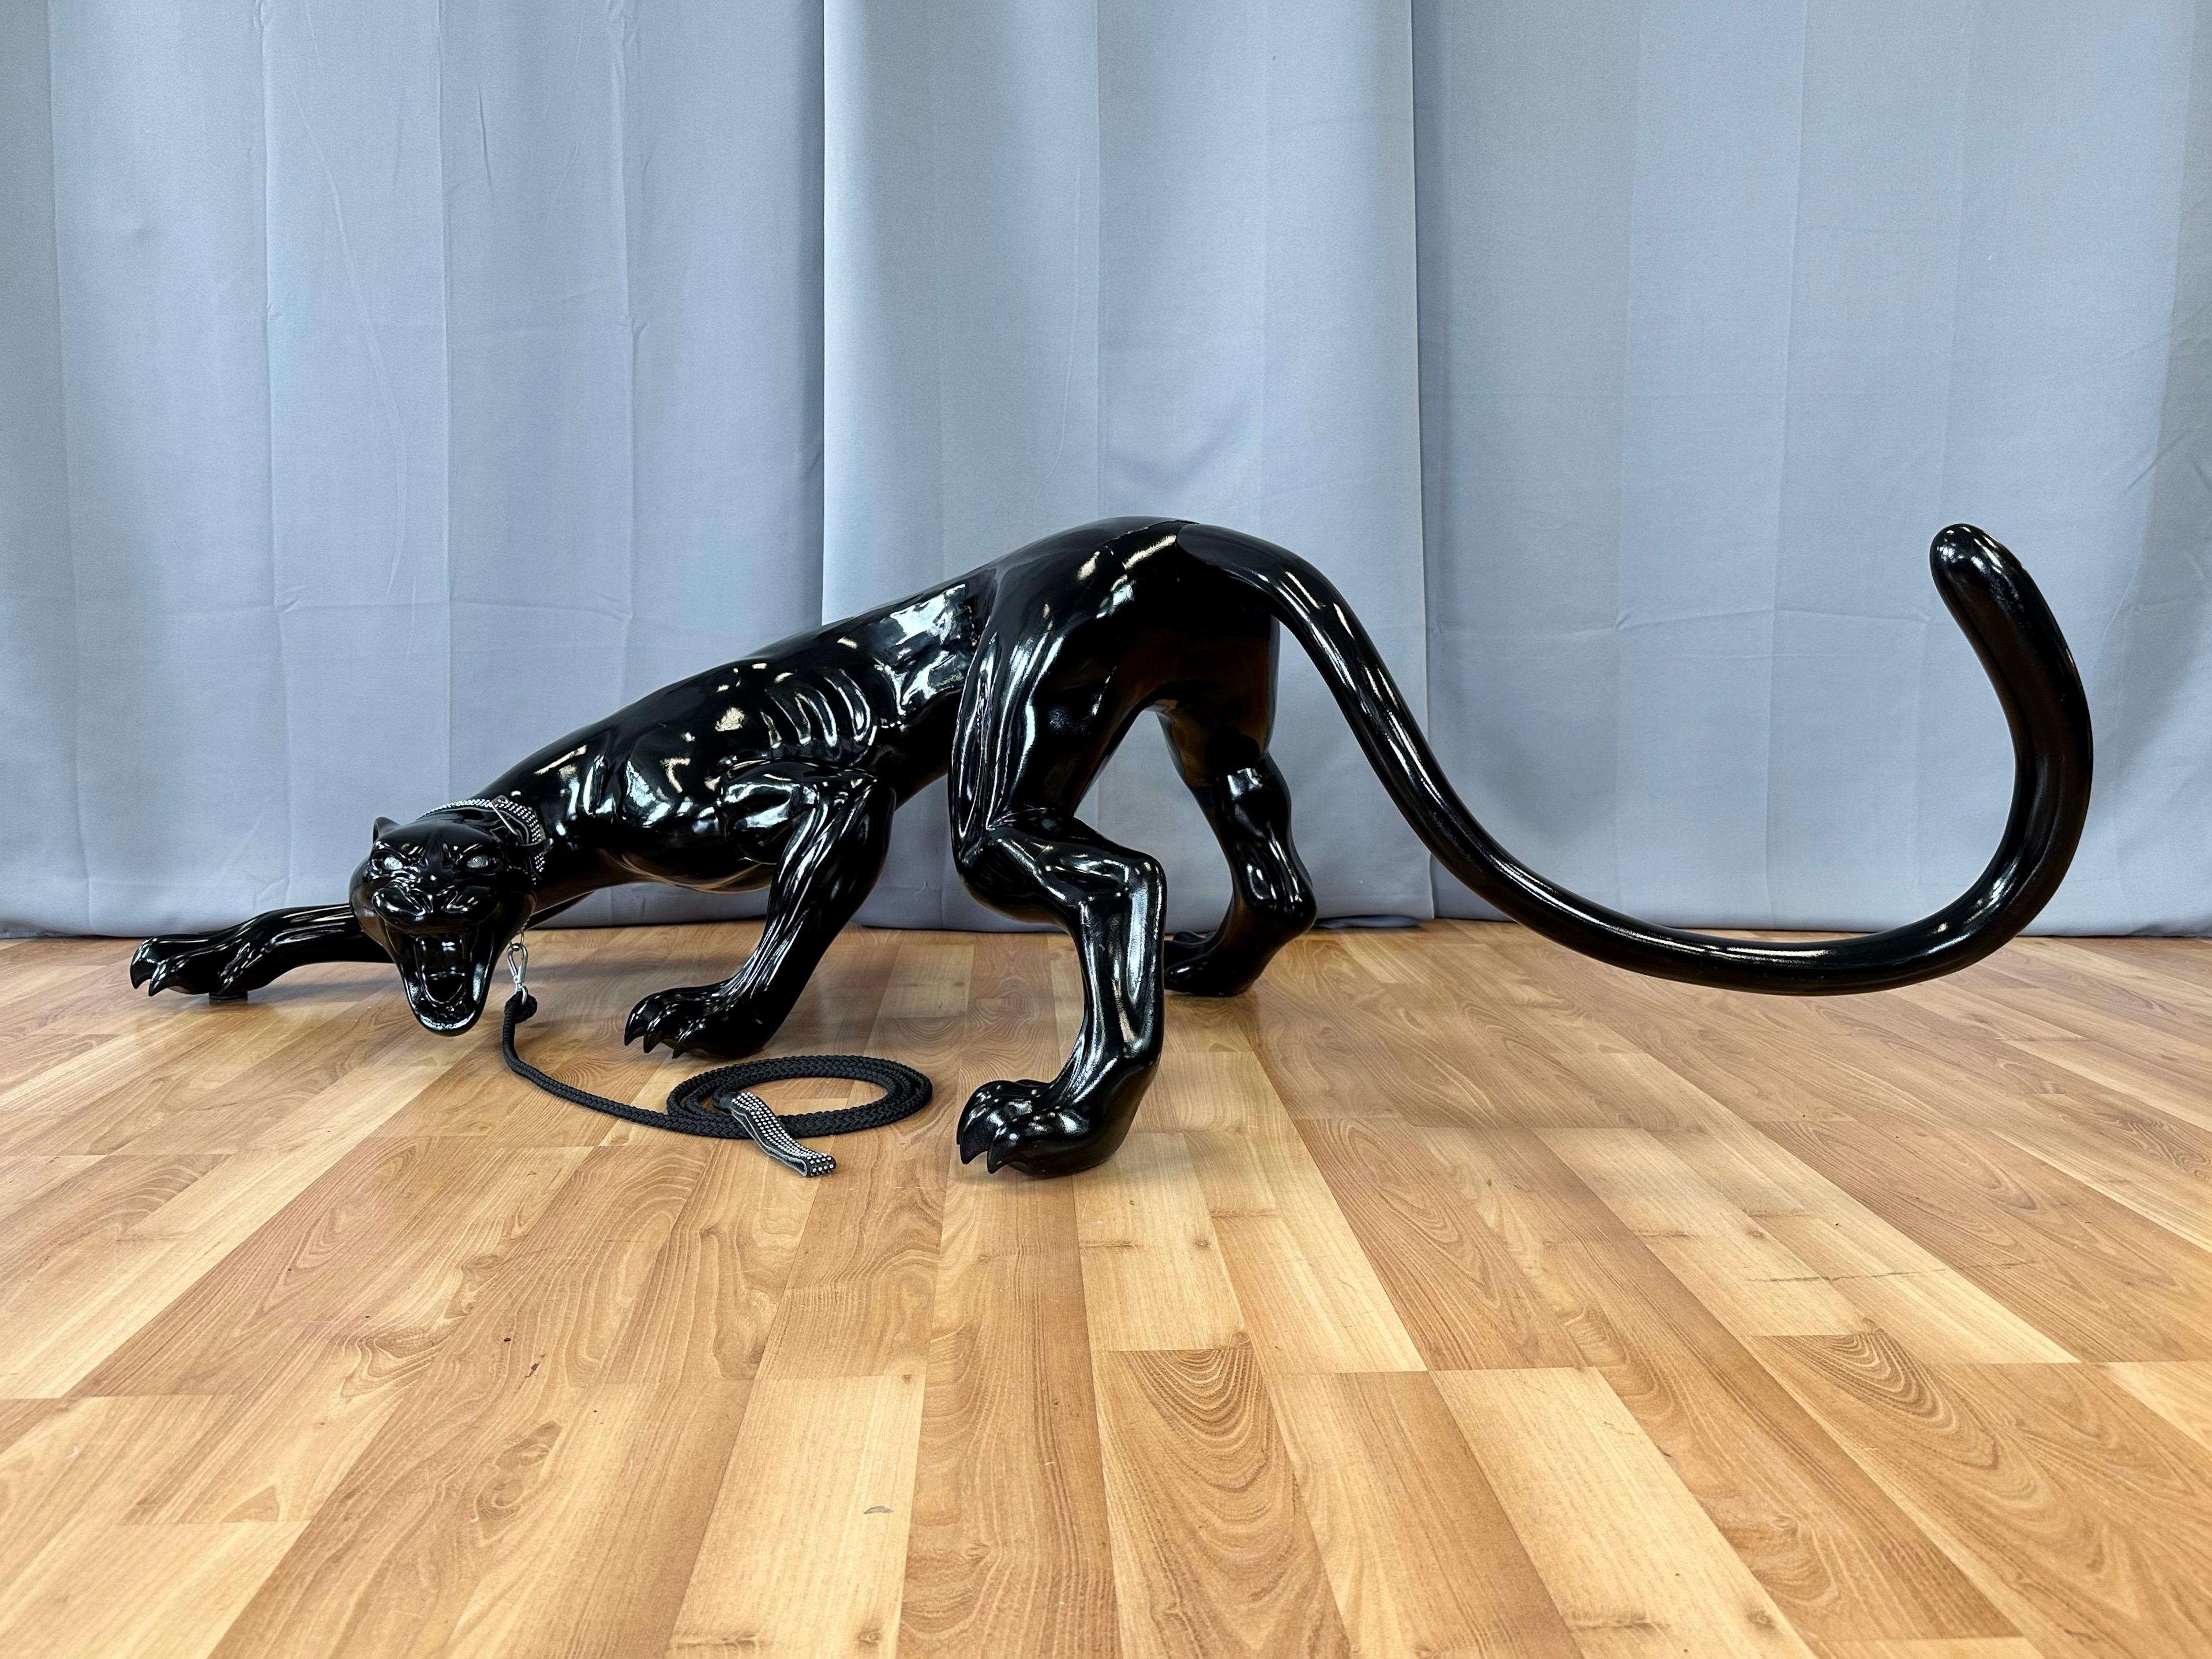 Magnifique et rare sculpture de panthère noire en fibre de verre, grandeur nature, datant de 2005. Attribué à un présentoir fabriqué sur mesure pour le magasin phare de Gucci à San Francisco, en Californie.

Maigre, méchante et prête à faire une